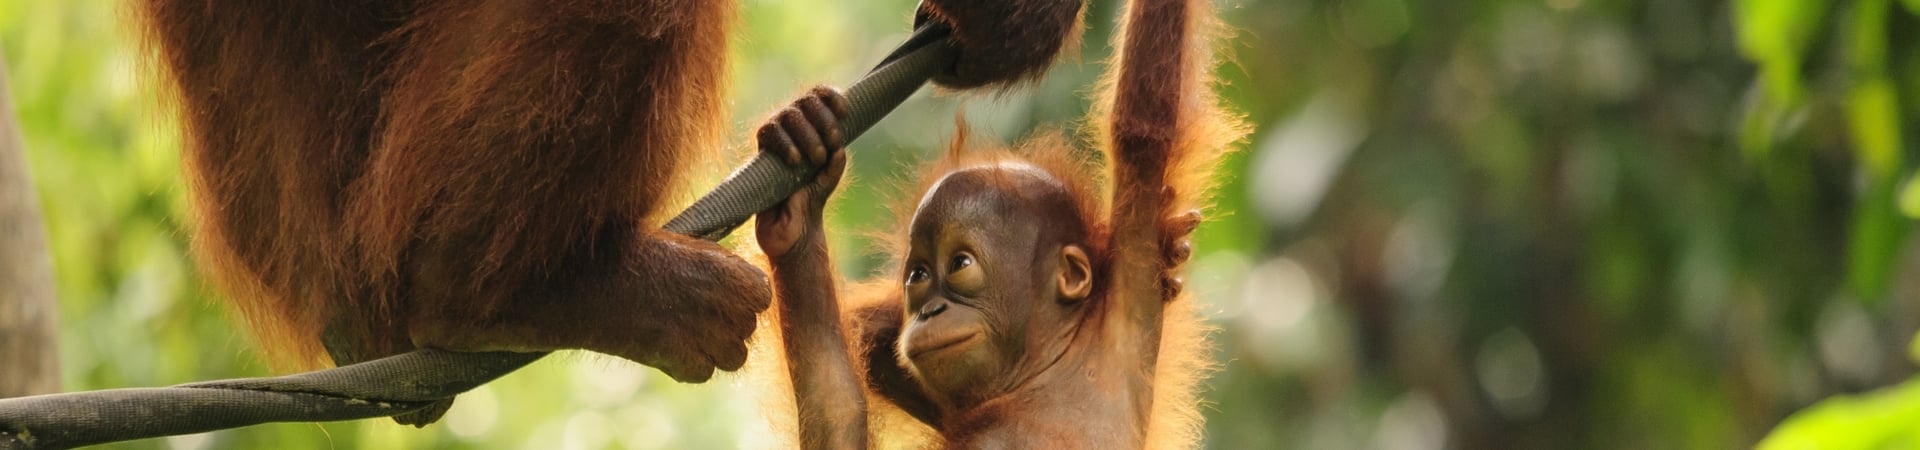 Kalimantan Orangutan Explorer